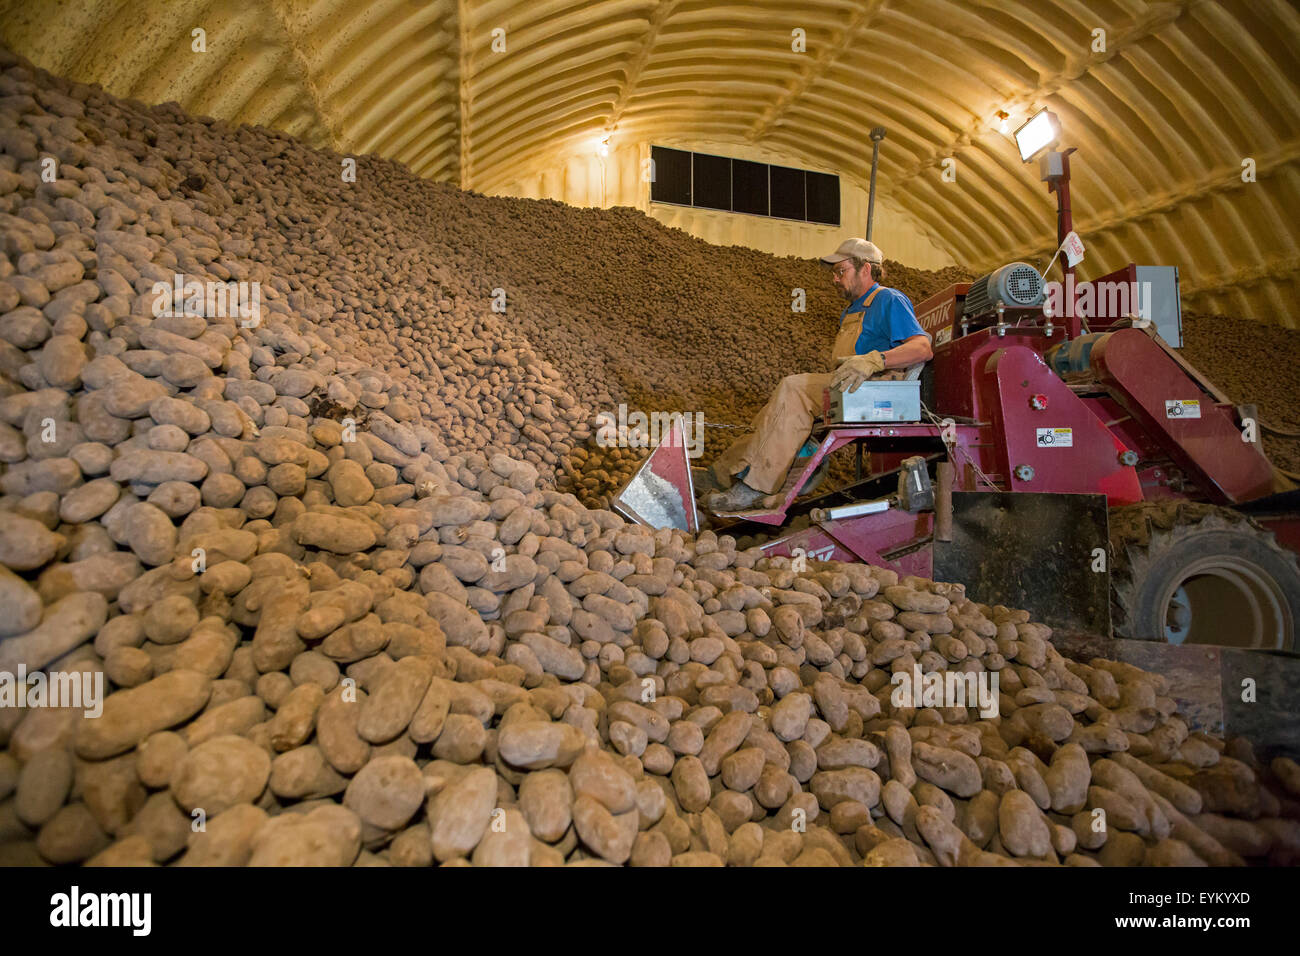 Shelley, Idaho - ein Arbeiter lädt Kartoffeln aus einer Farm Kartoffel Keller für die Lieferung an eine Kartoffel Verpackung Pflanze. Stockfoto